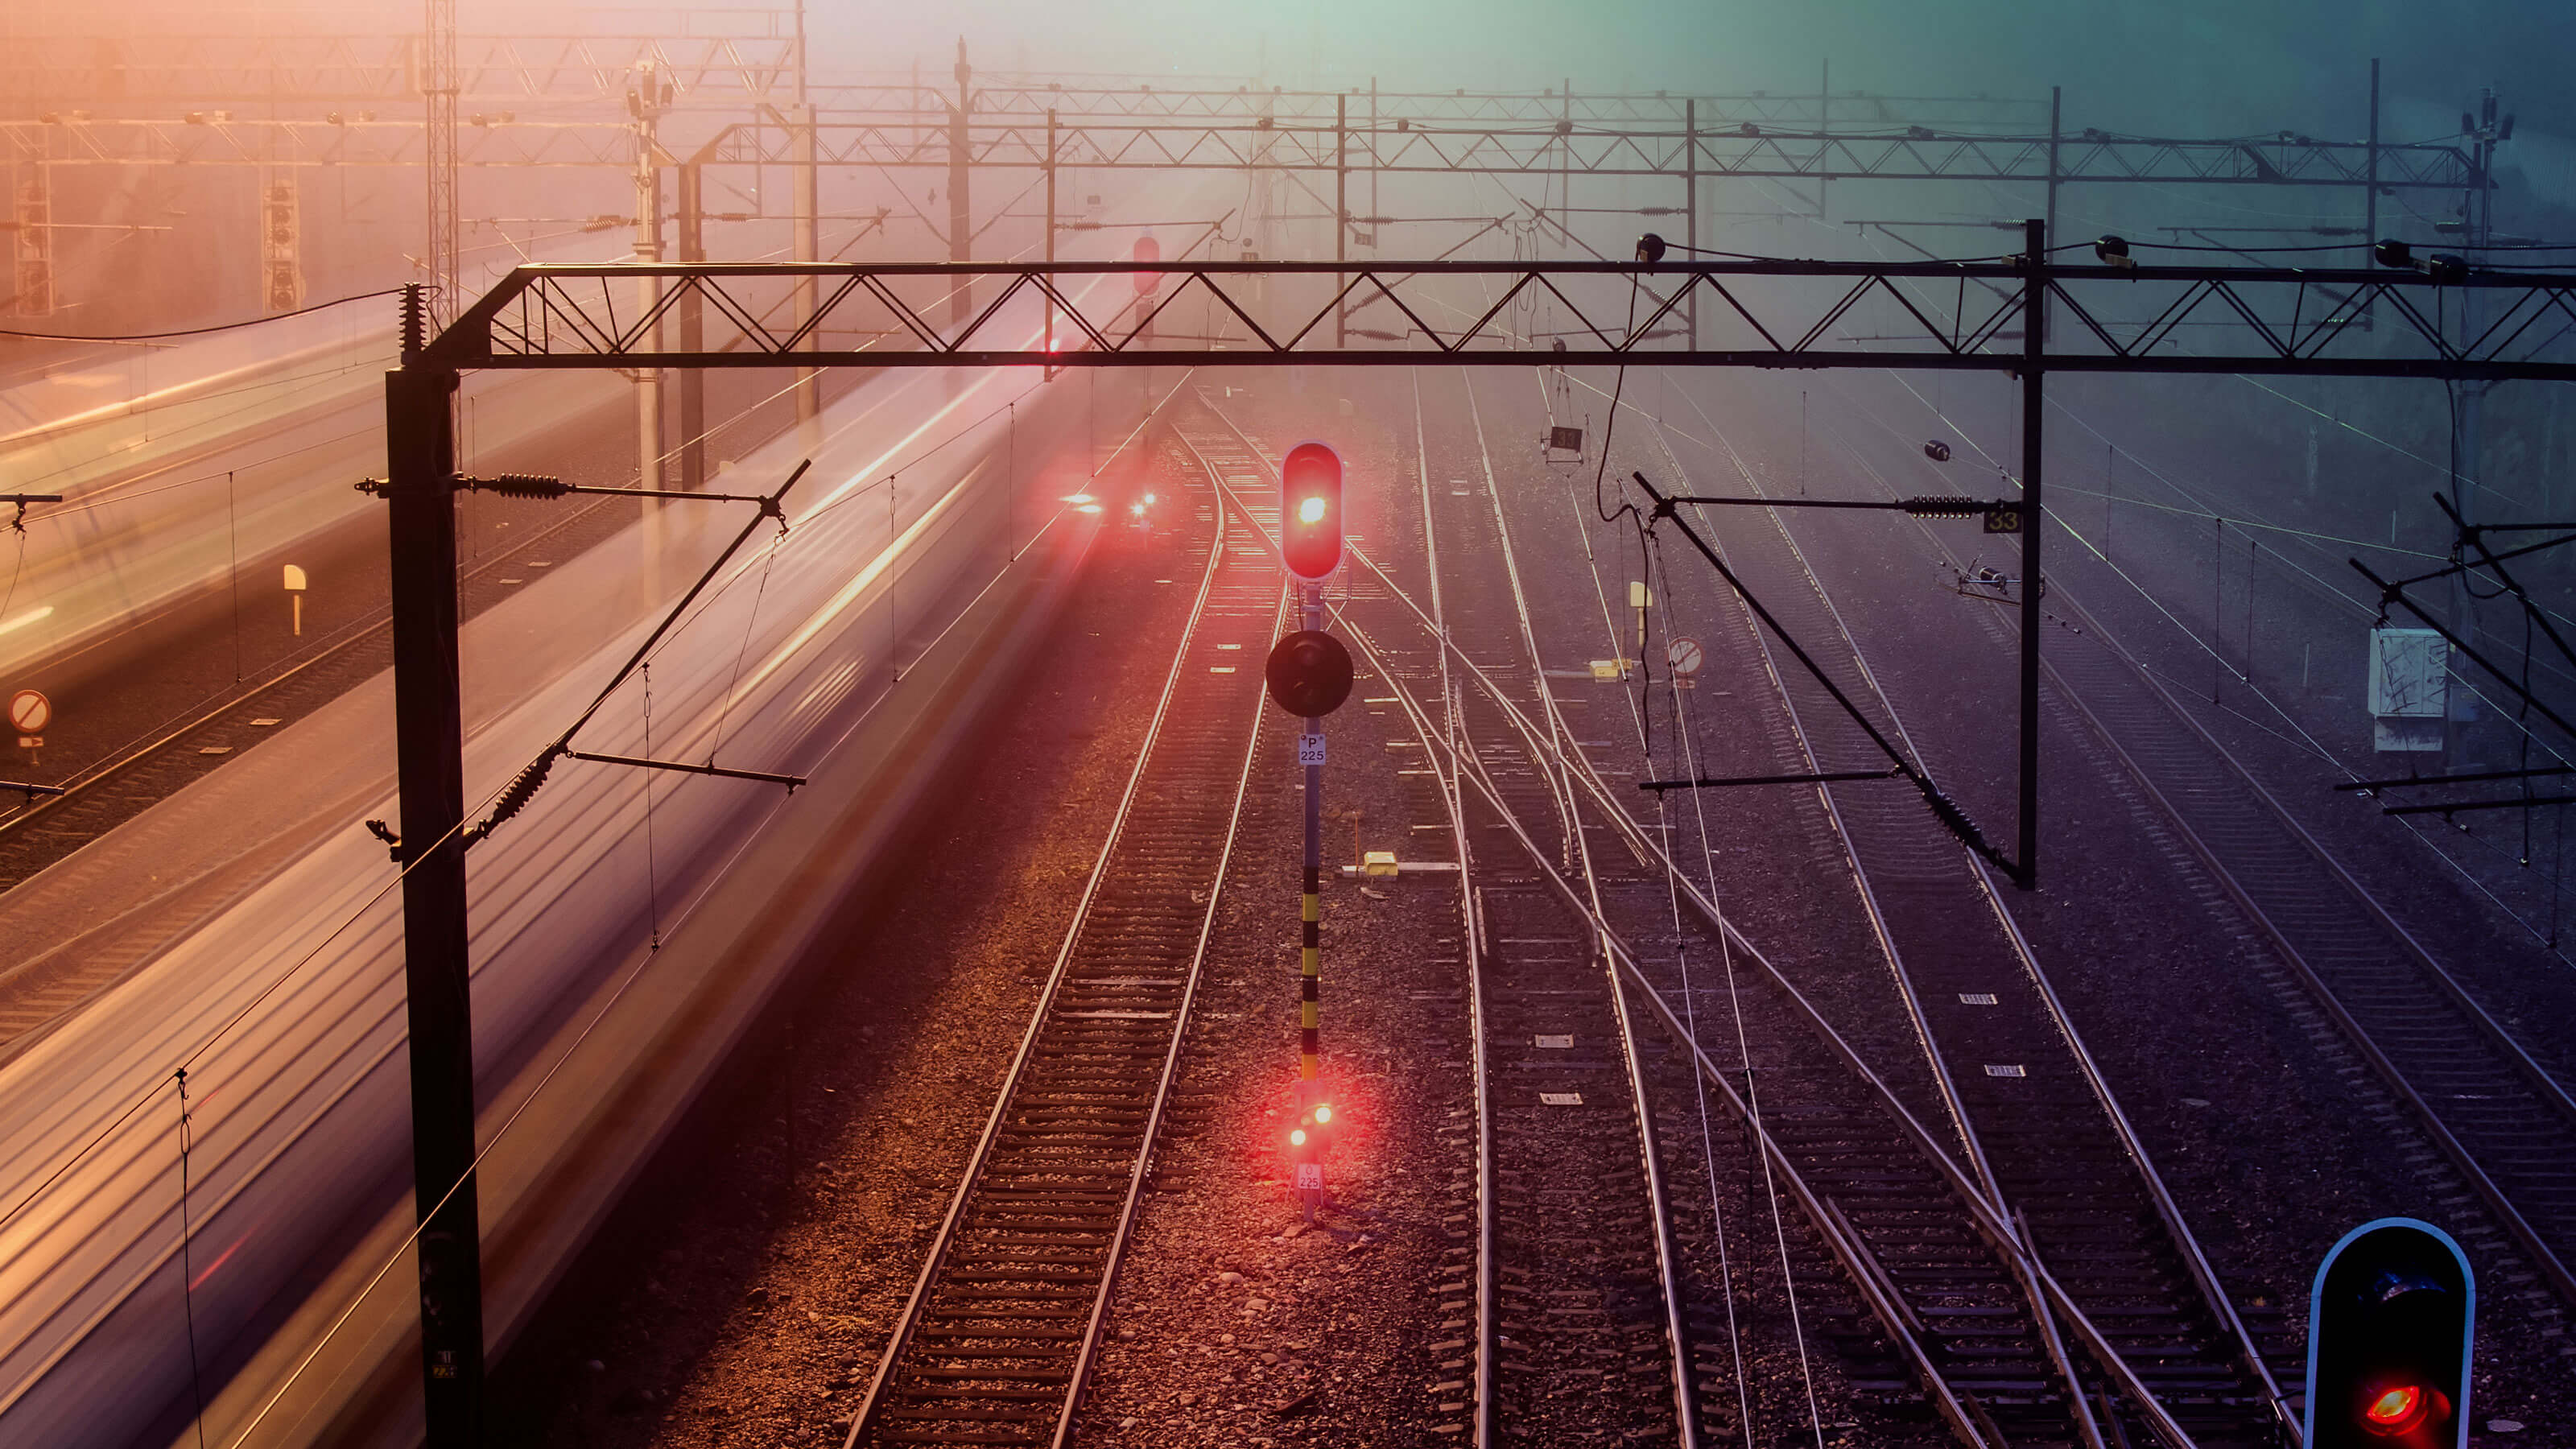 SystemX, SNCF, Alstom et Systra publient le premier jeu de données open source de référence relatif aux feux de circulation ferroviaire